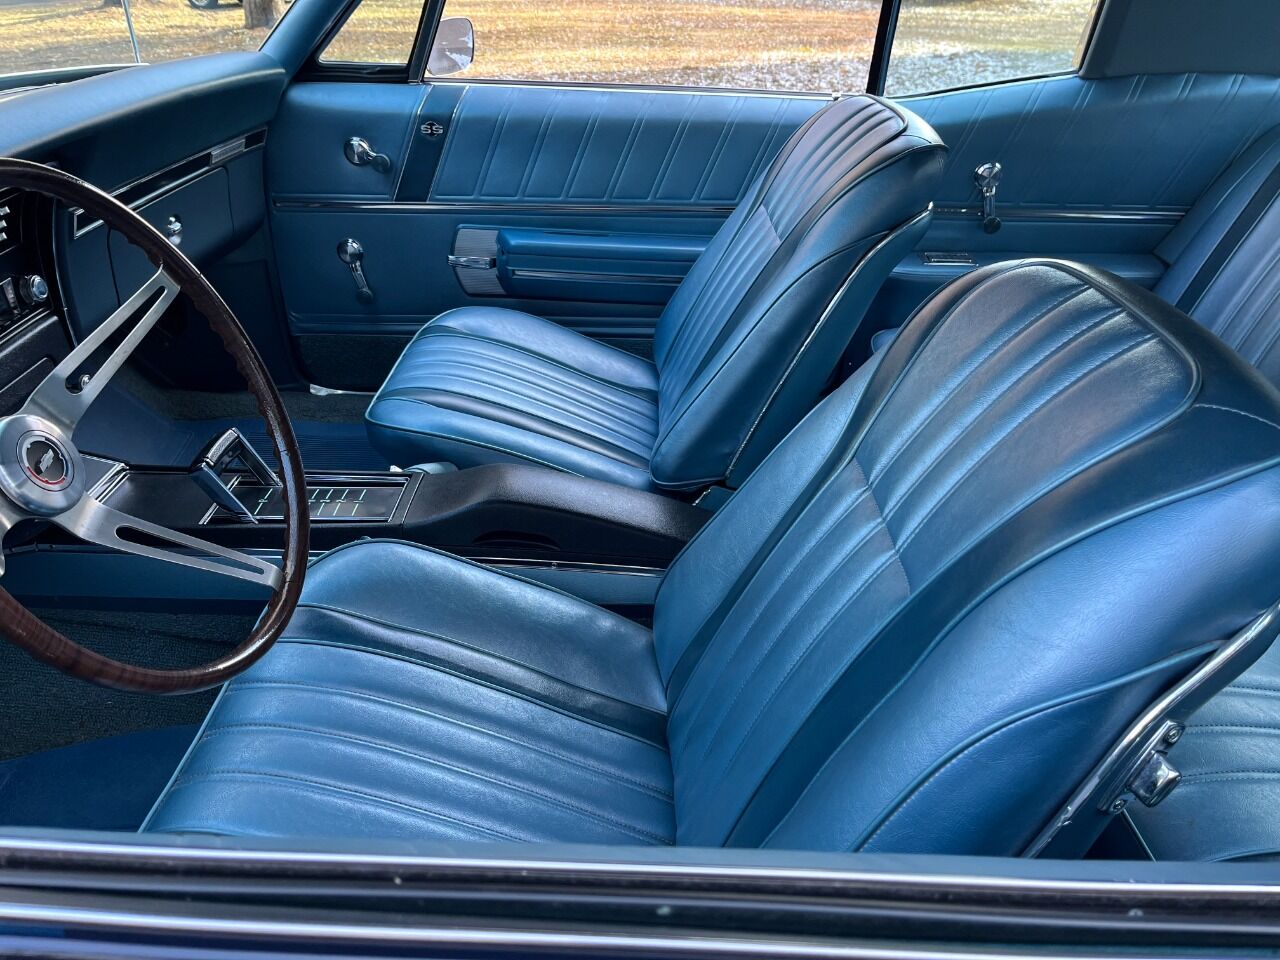 1968 Chevrolet Impala 149